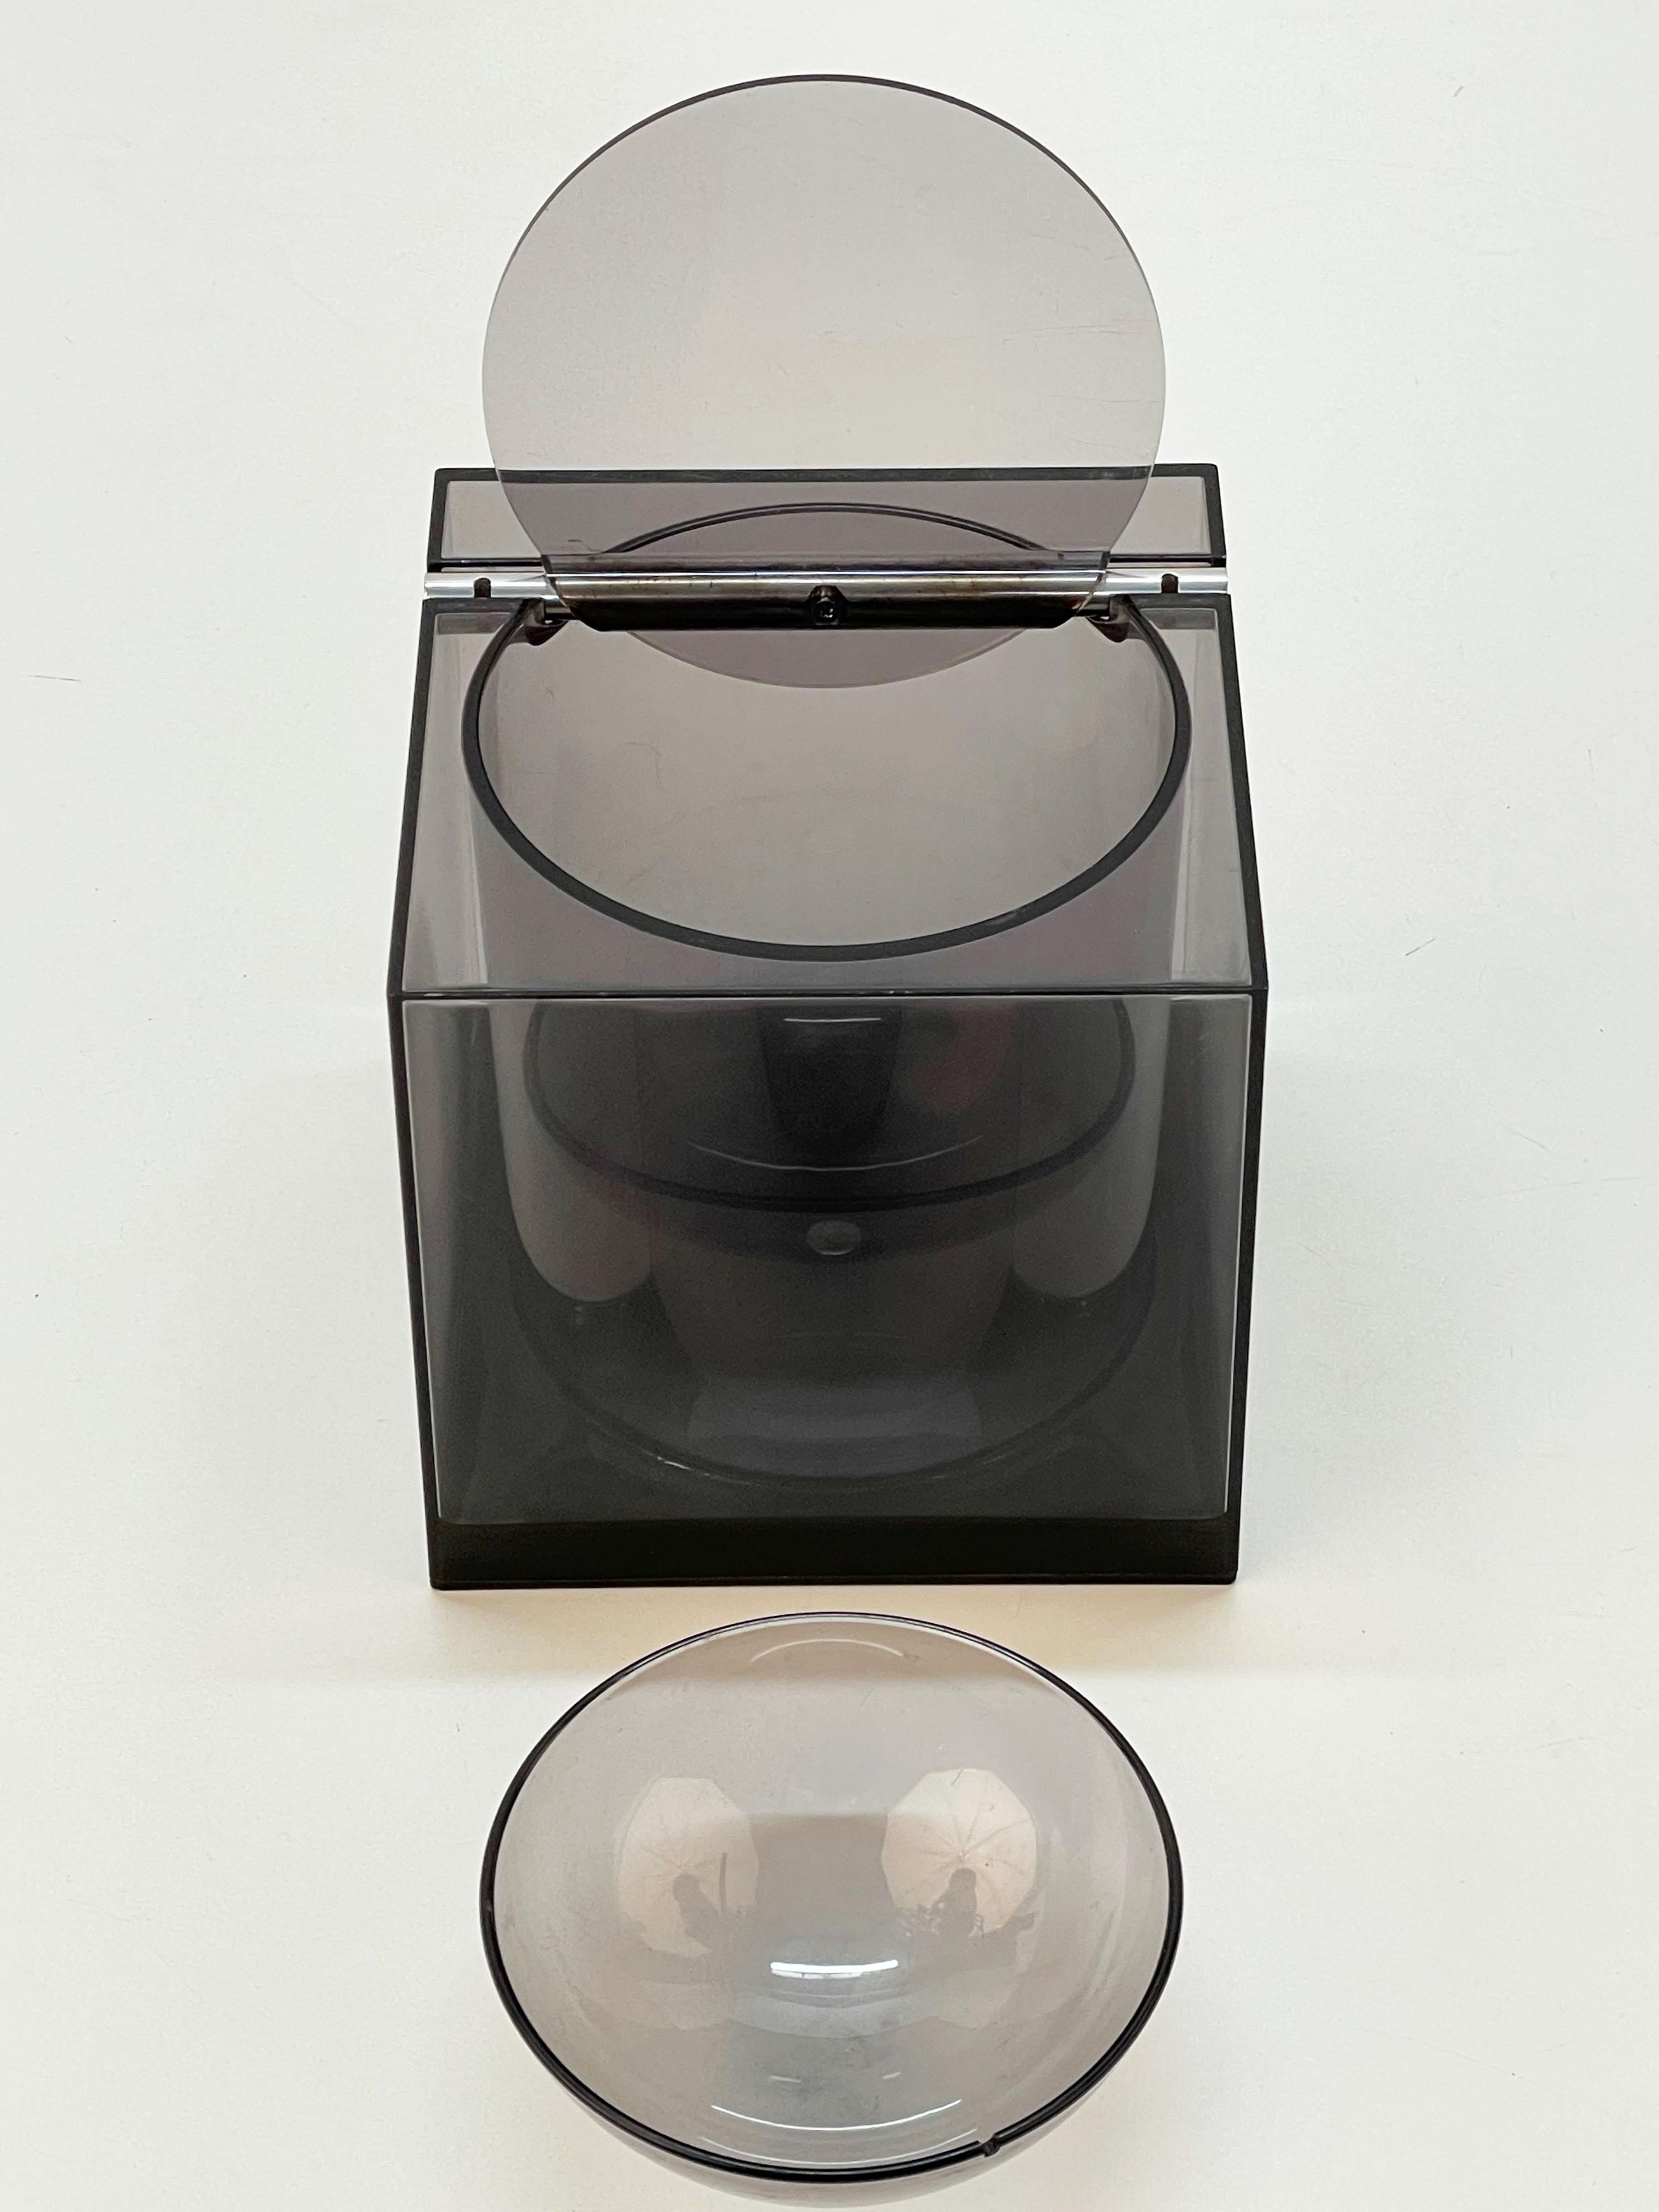 Magnifique seau à glace cubique en acrylique fumé du milieu du siècle dernier pour Di Cini & Nils. Cet objet étonnant a été conçu par le studio italien Opi, et plus précisément par Franco Bettonica et Mario Melocchi, en 1974.

Cette pièce de